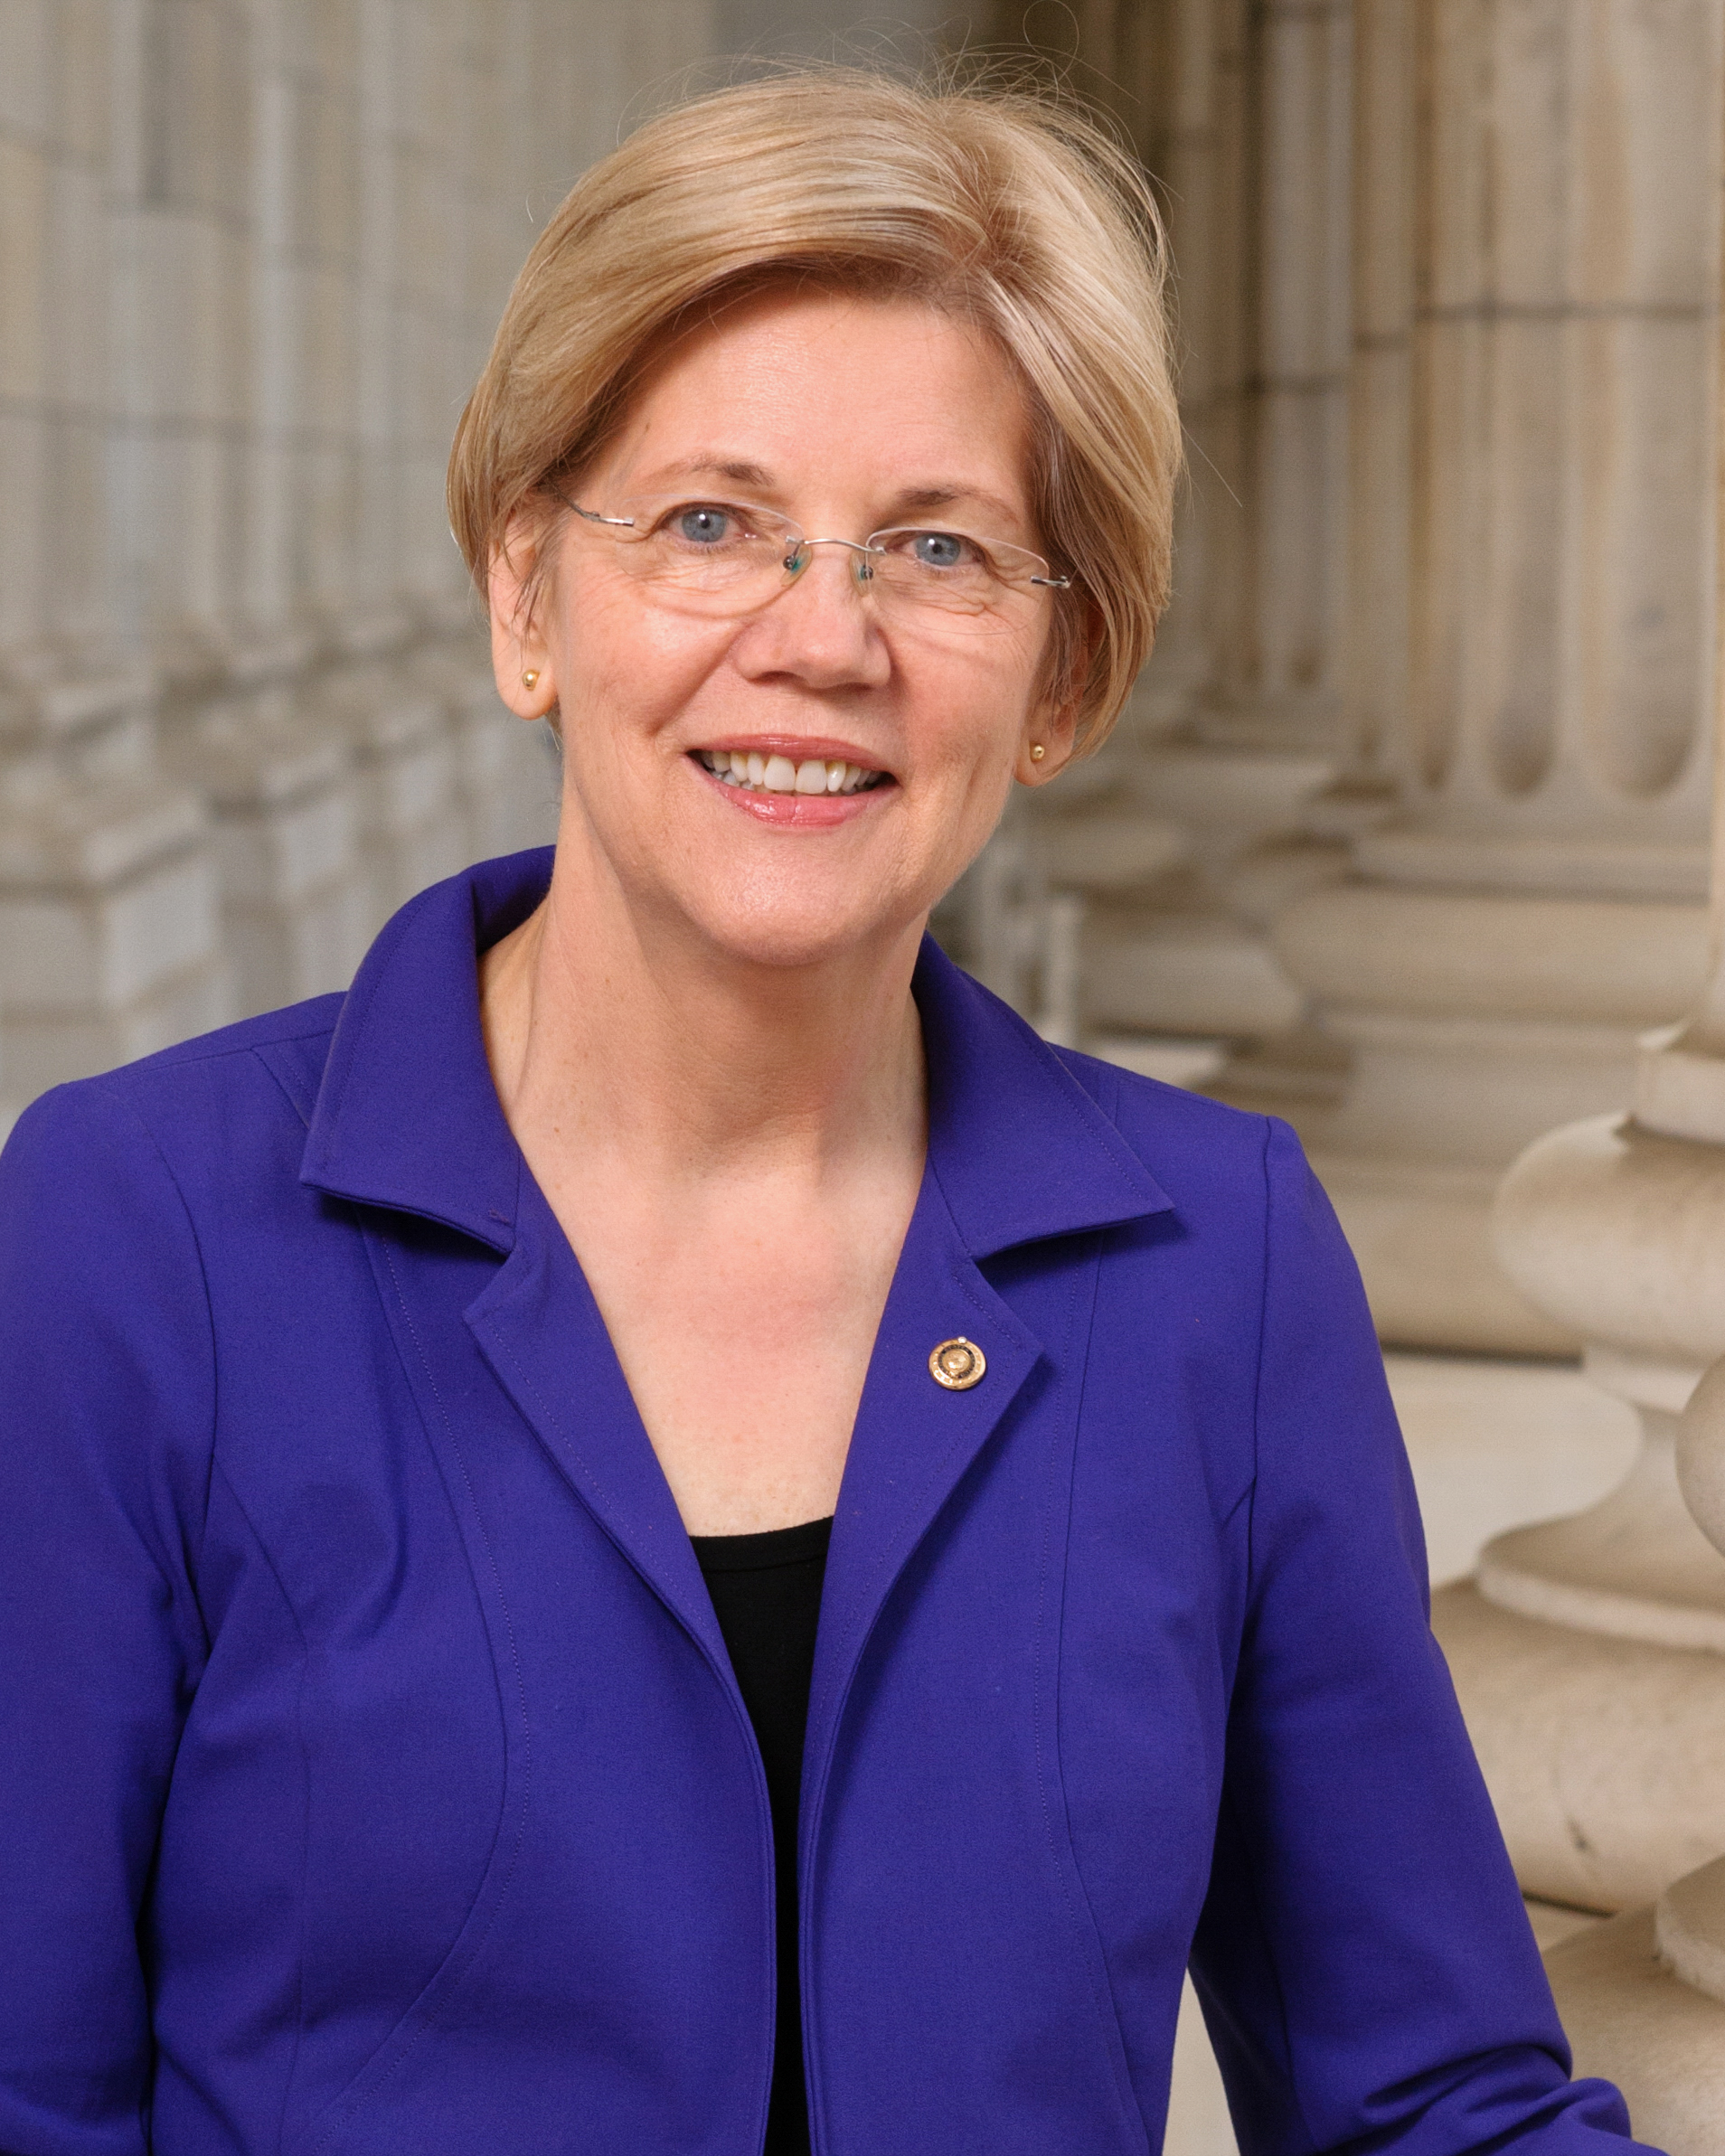 UPDATE 2-Goldman's Blankfein calls Warren's criticism of billionaires 'tribalism'